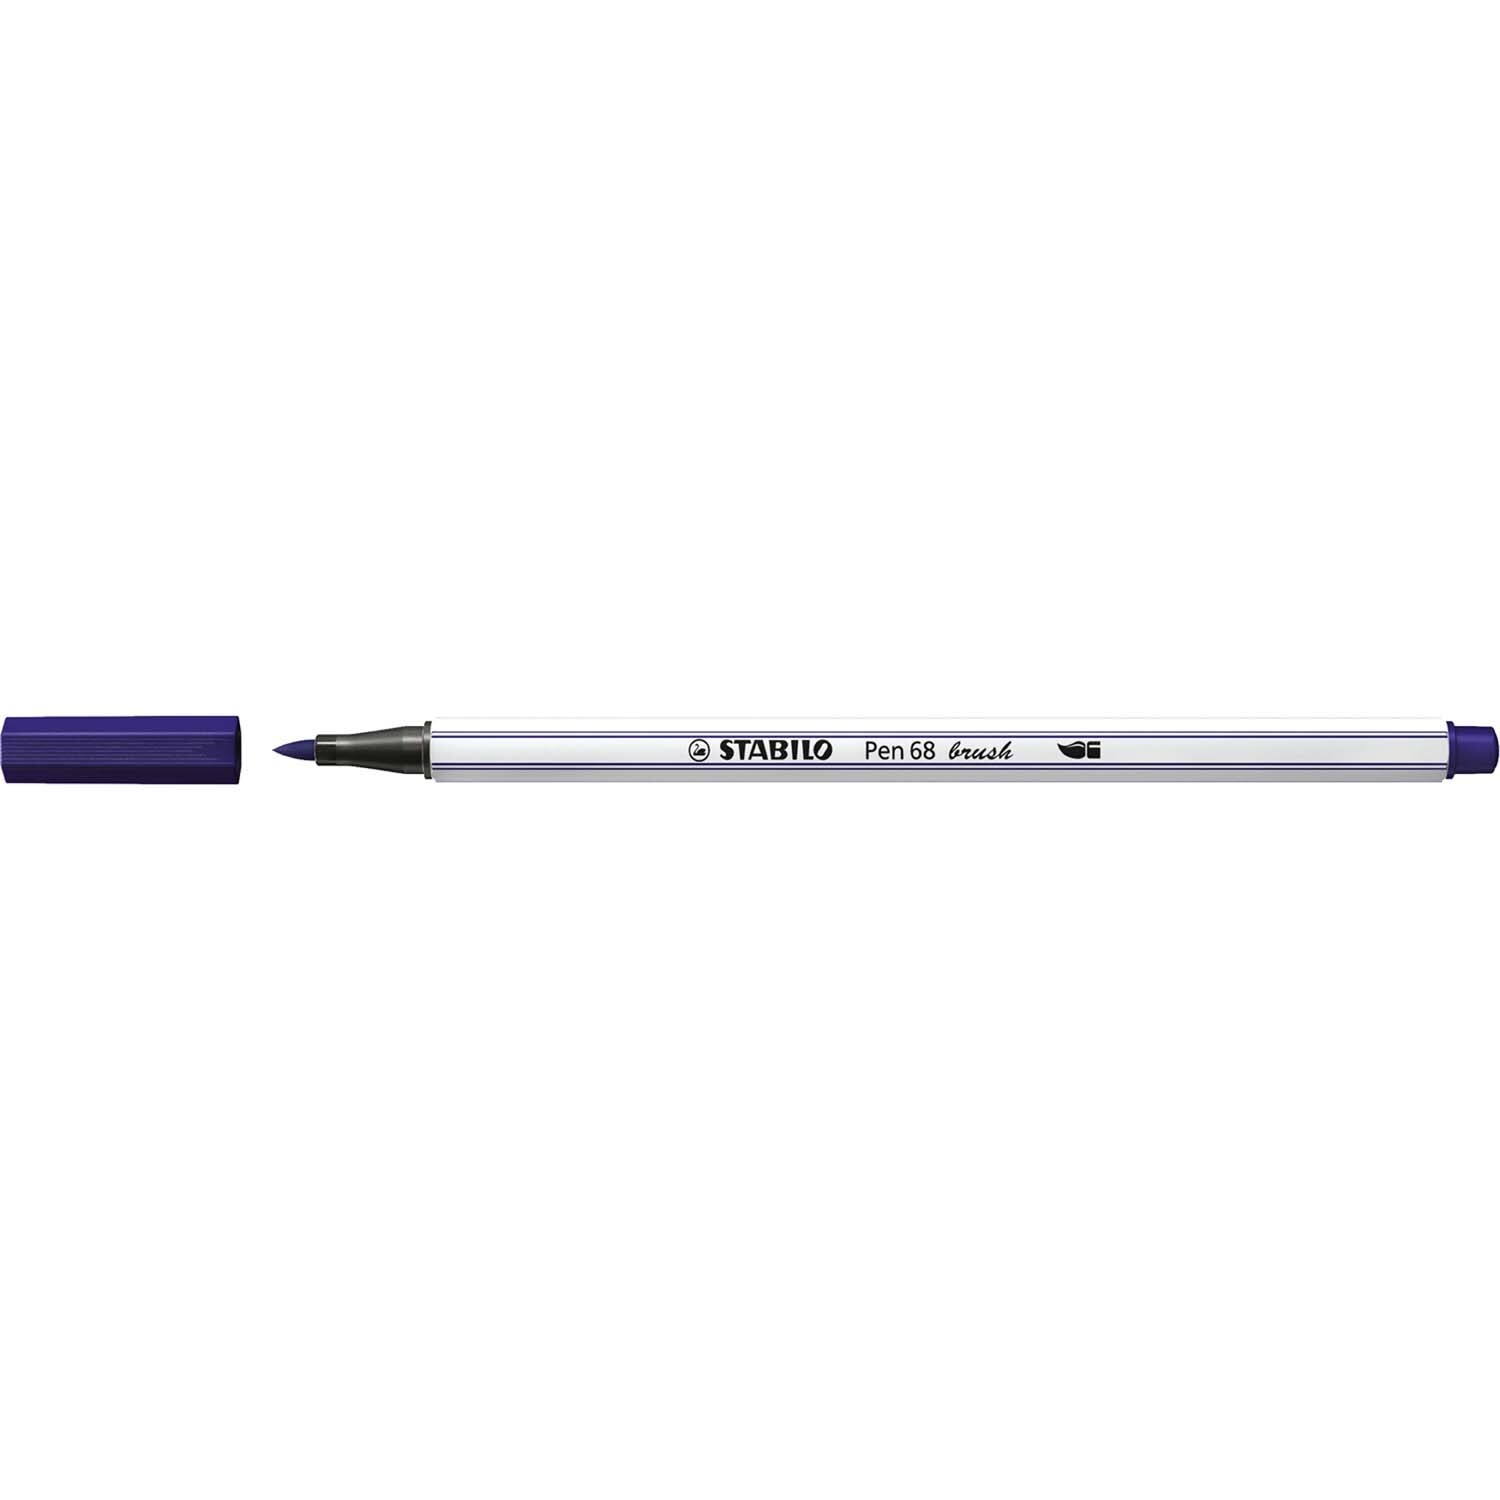 Pen 68 brush